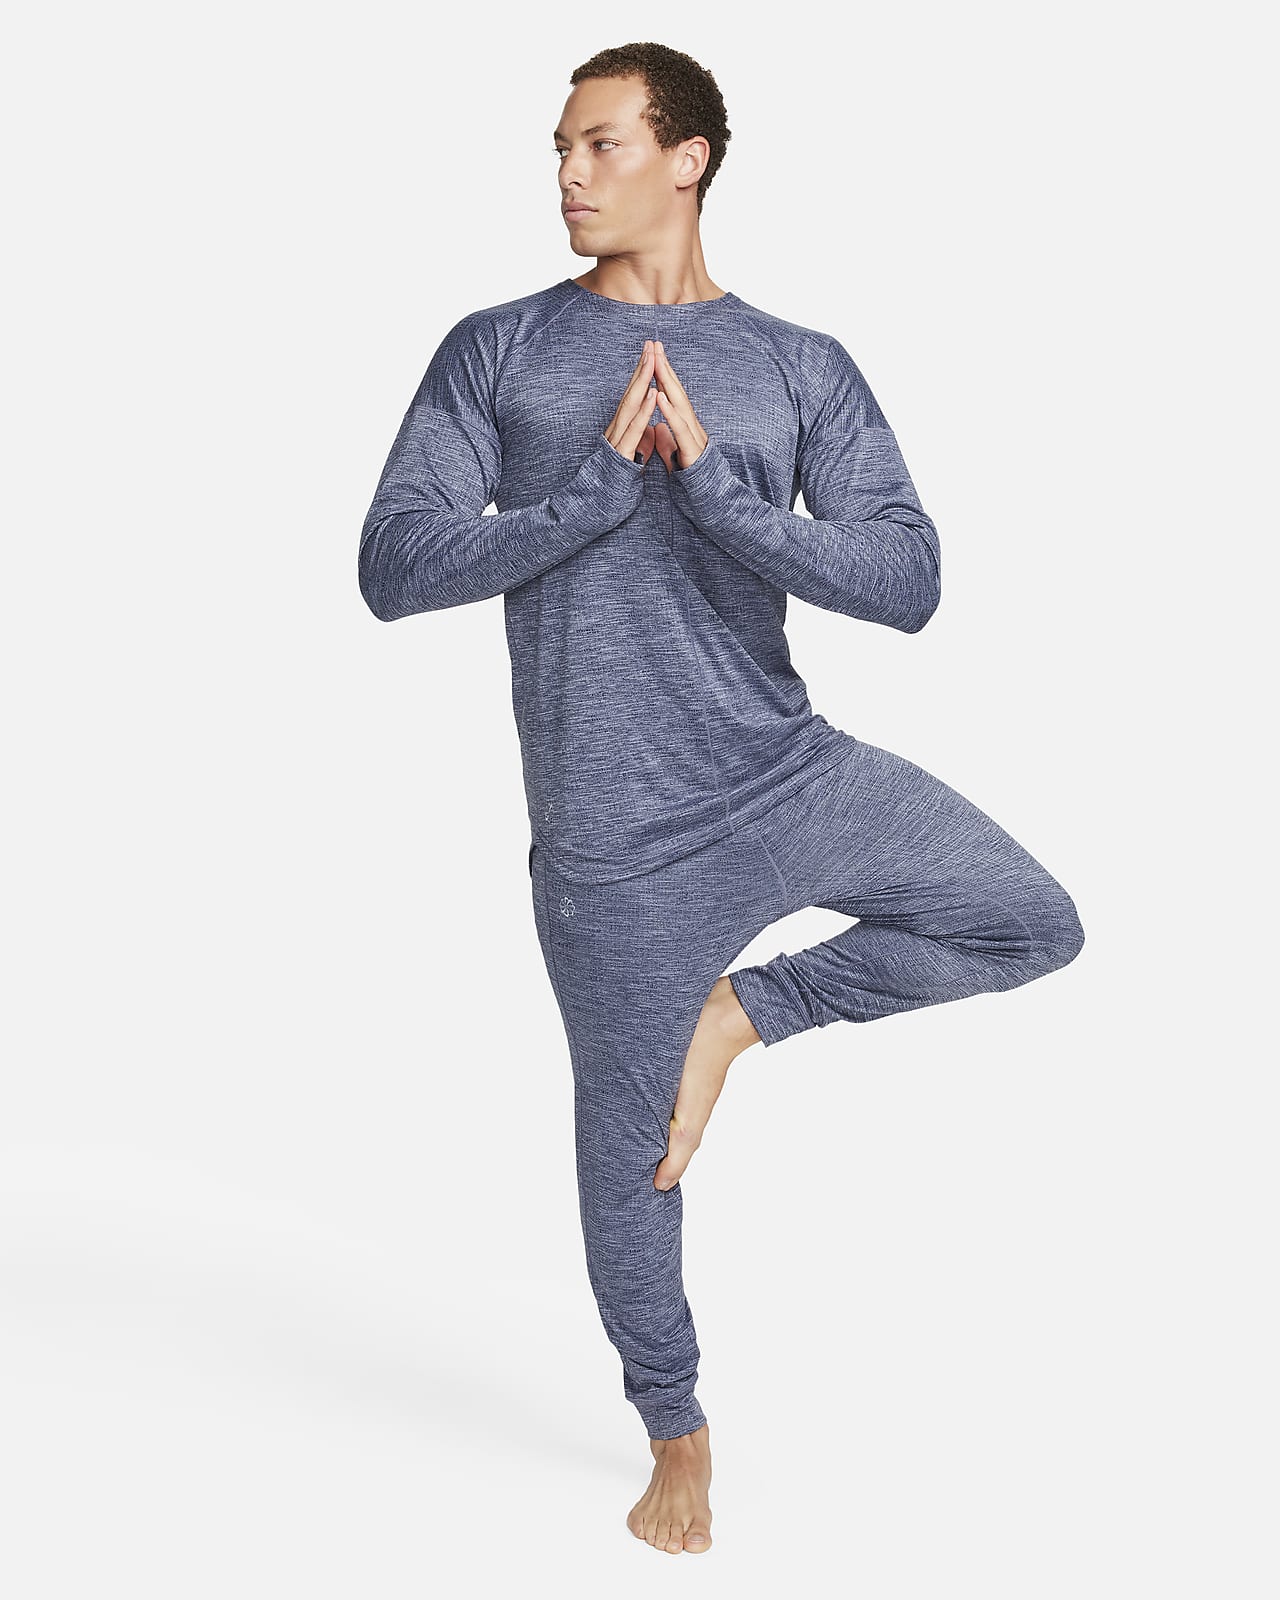 Nike yoga tank mens - Gem